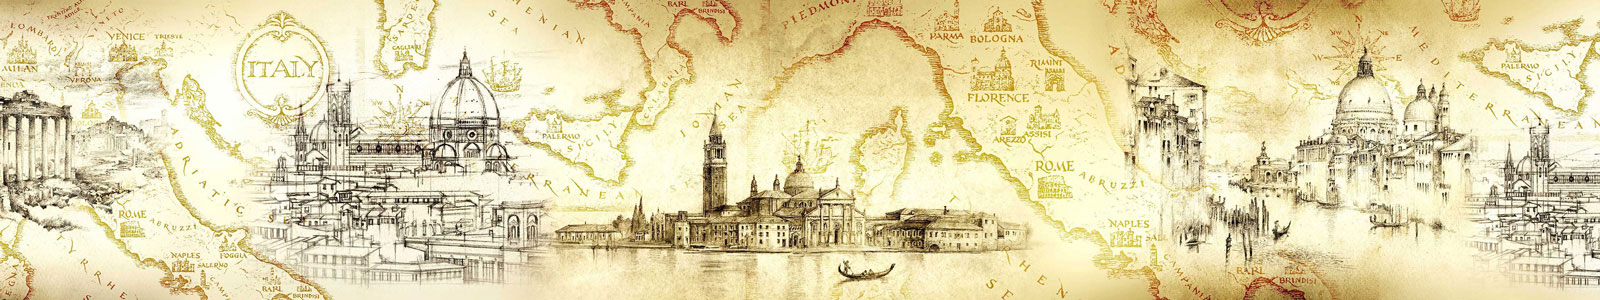 №6172 - Винтажный фон с рисунками итальянских городов